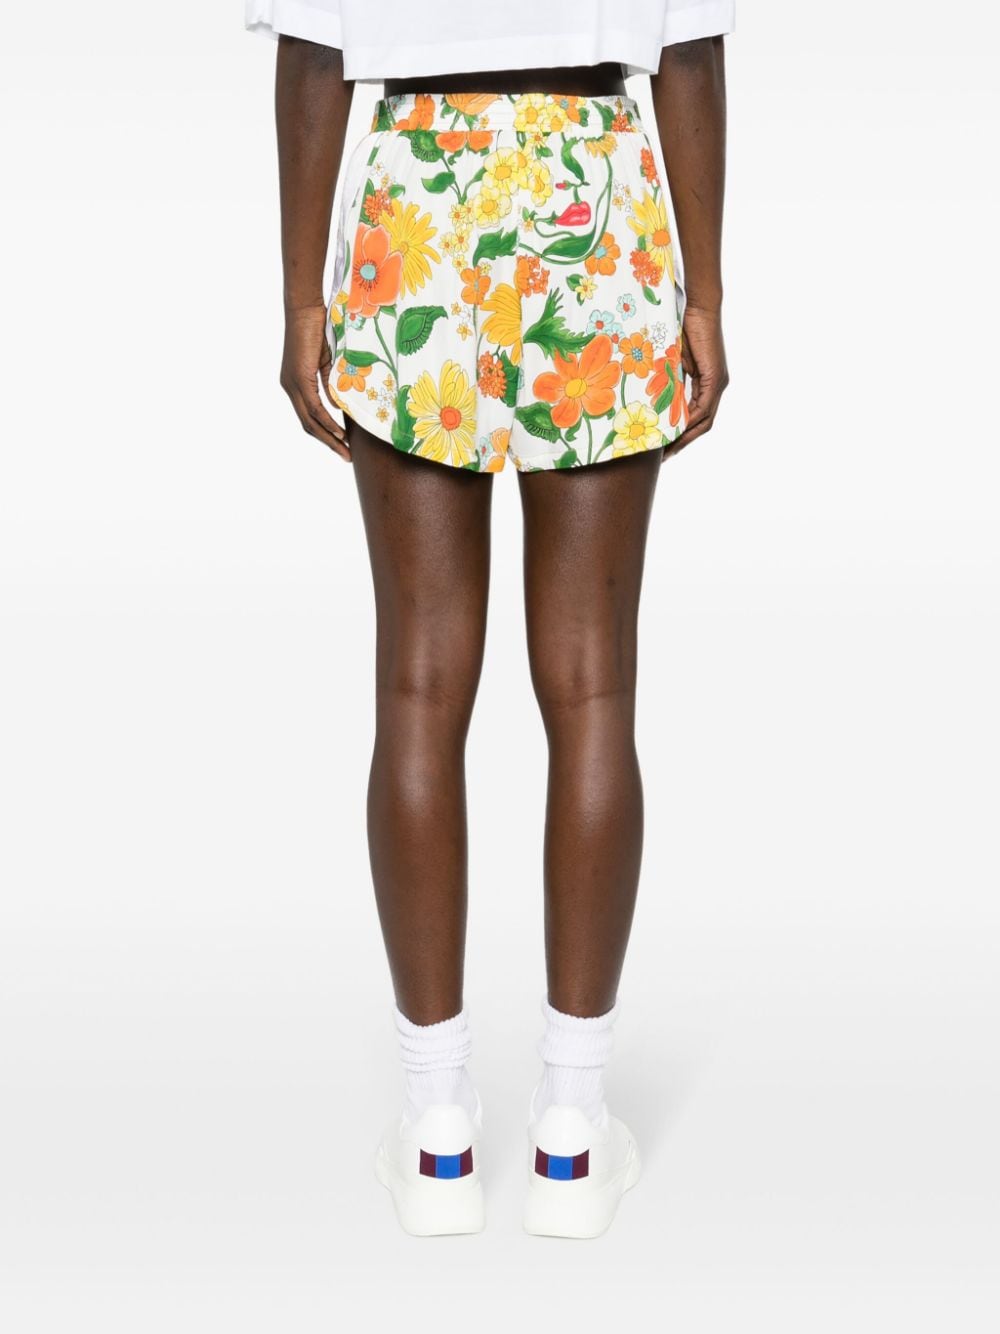 Floral-print track shorts<BR/><BR/><BR/>